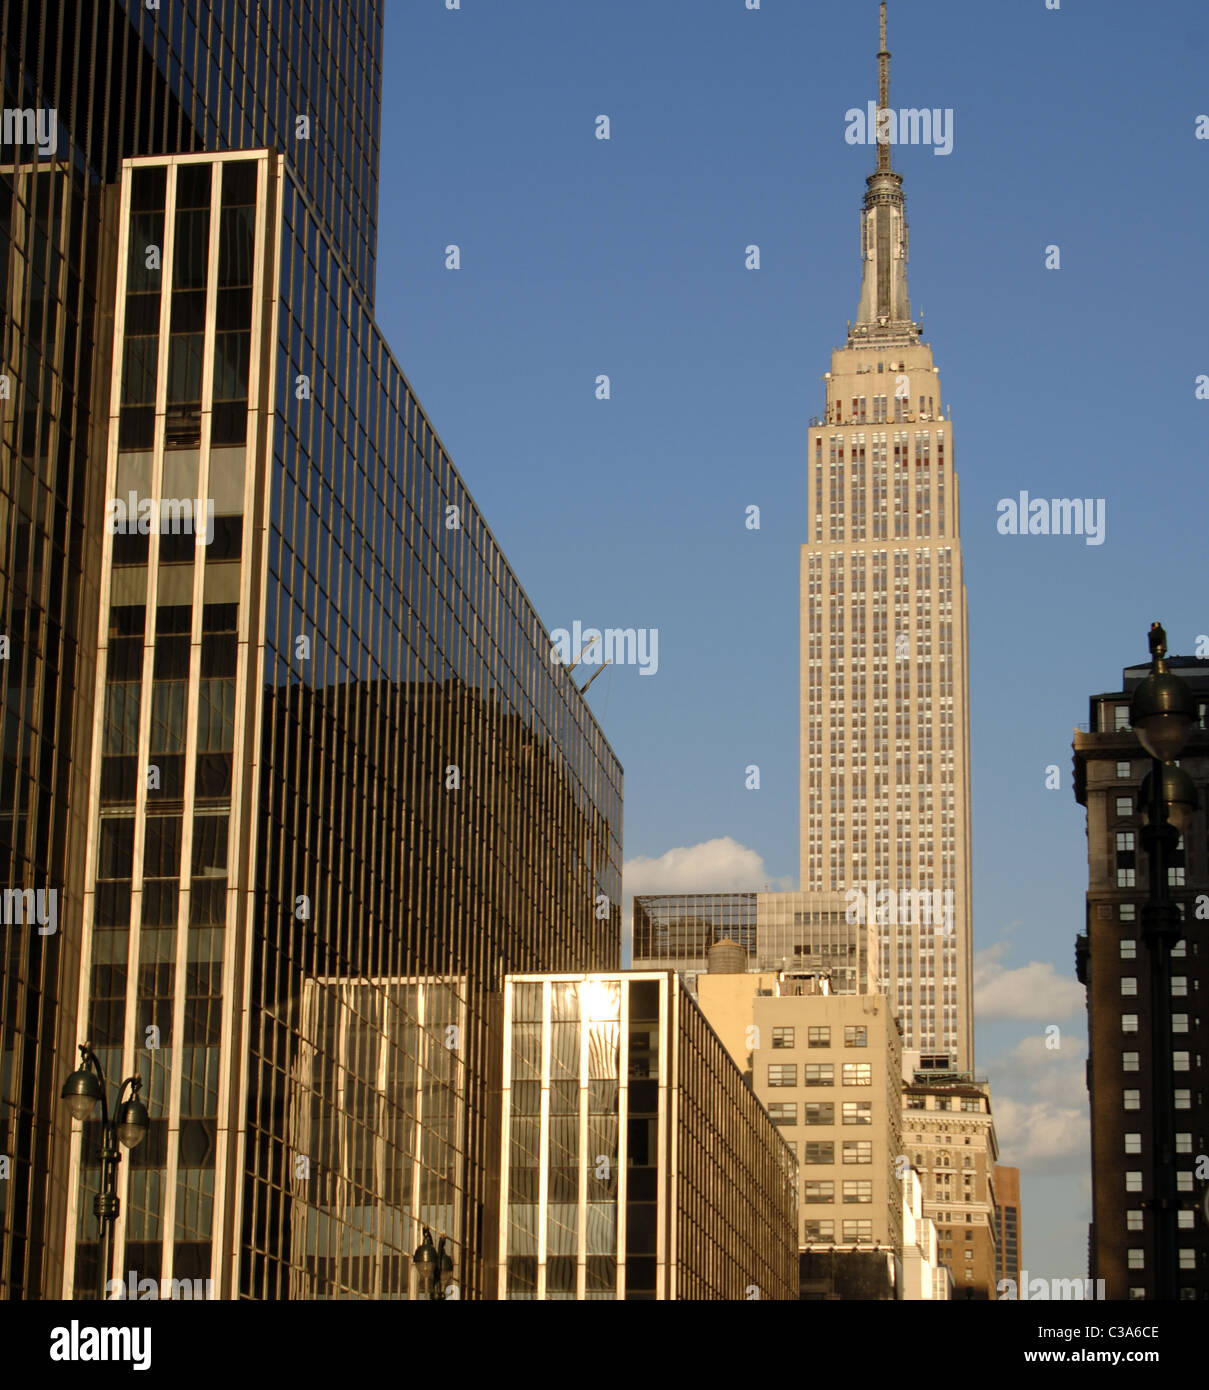 Stati Uniti. New York. Empire State Building, costruito tra il 1929 e il 1931 da William Agnello. Foto Stock